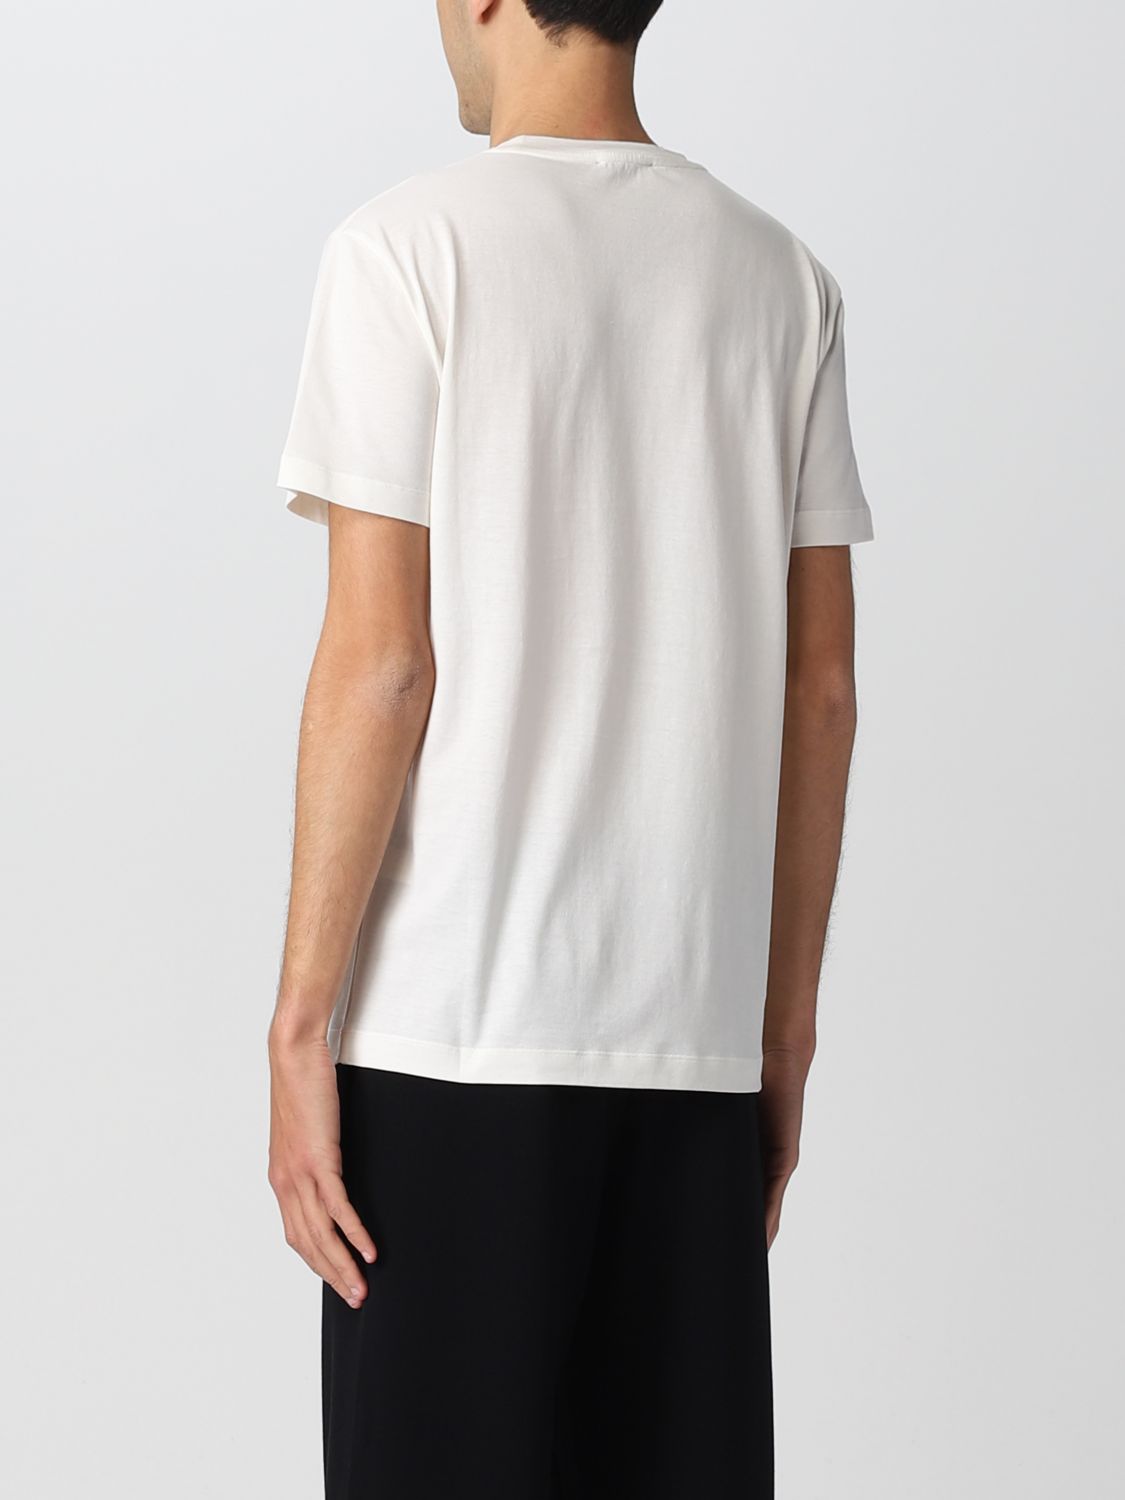 Tシャツ Roberto Collina: Tシャツ Roberto Collina メンズ ホワイト 2